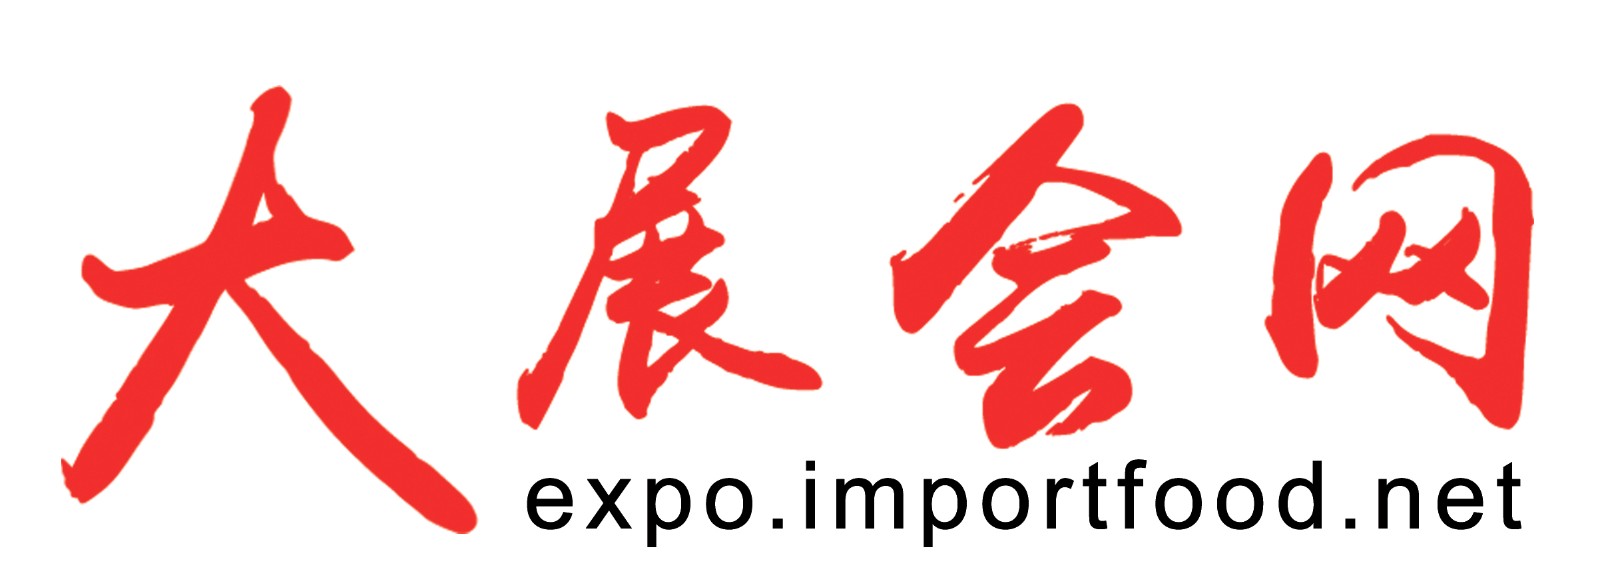 大展会网logo.jpg